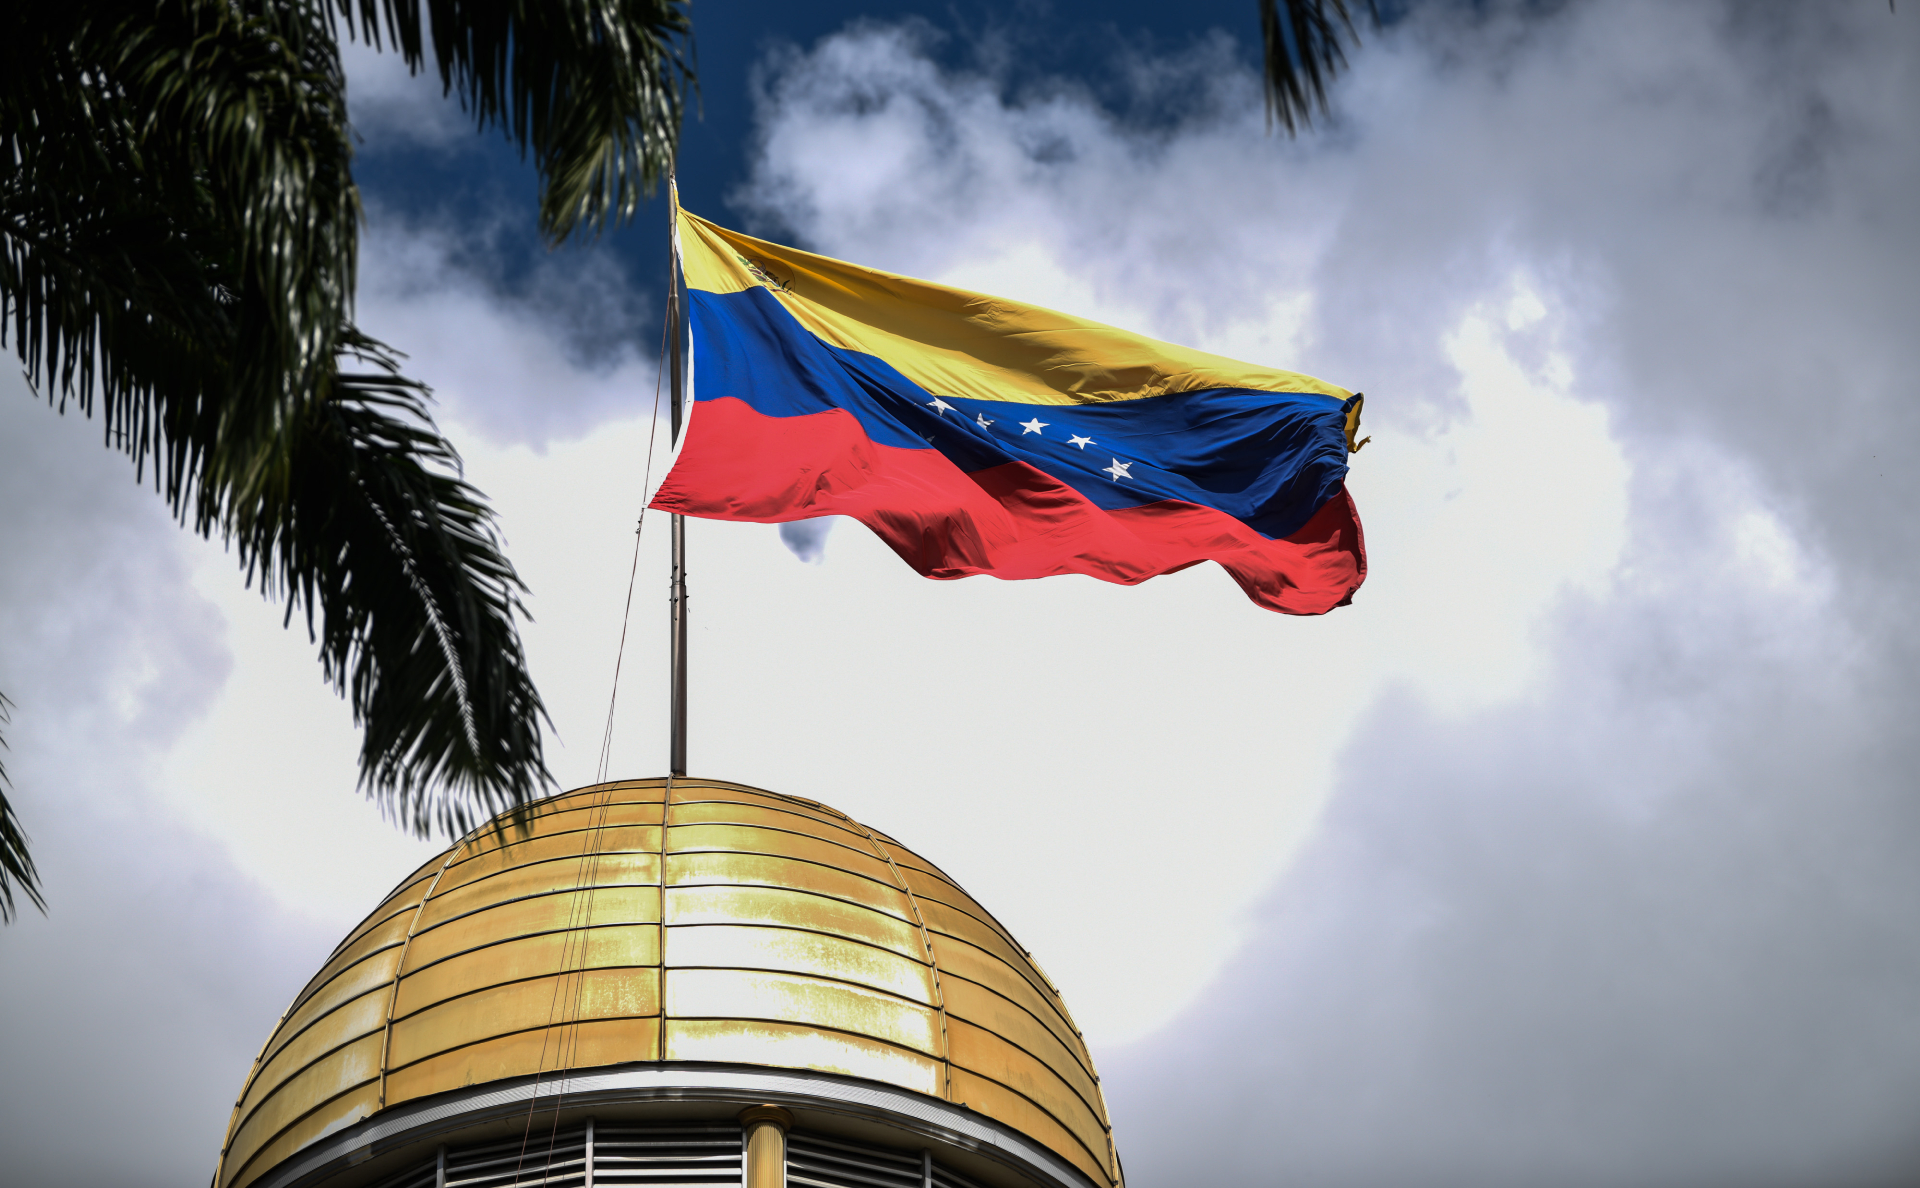 Правительство Венесуэлы возобновило переговоры с оппозицией"/>













